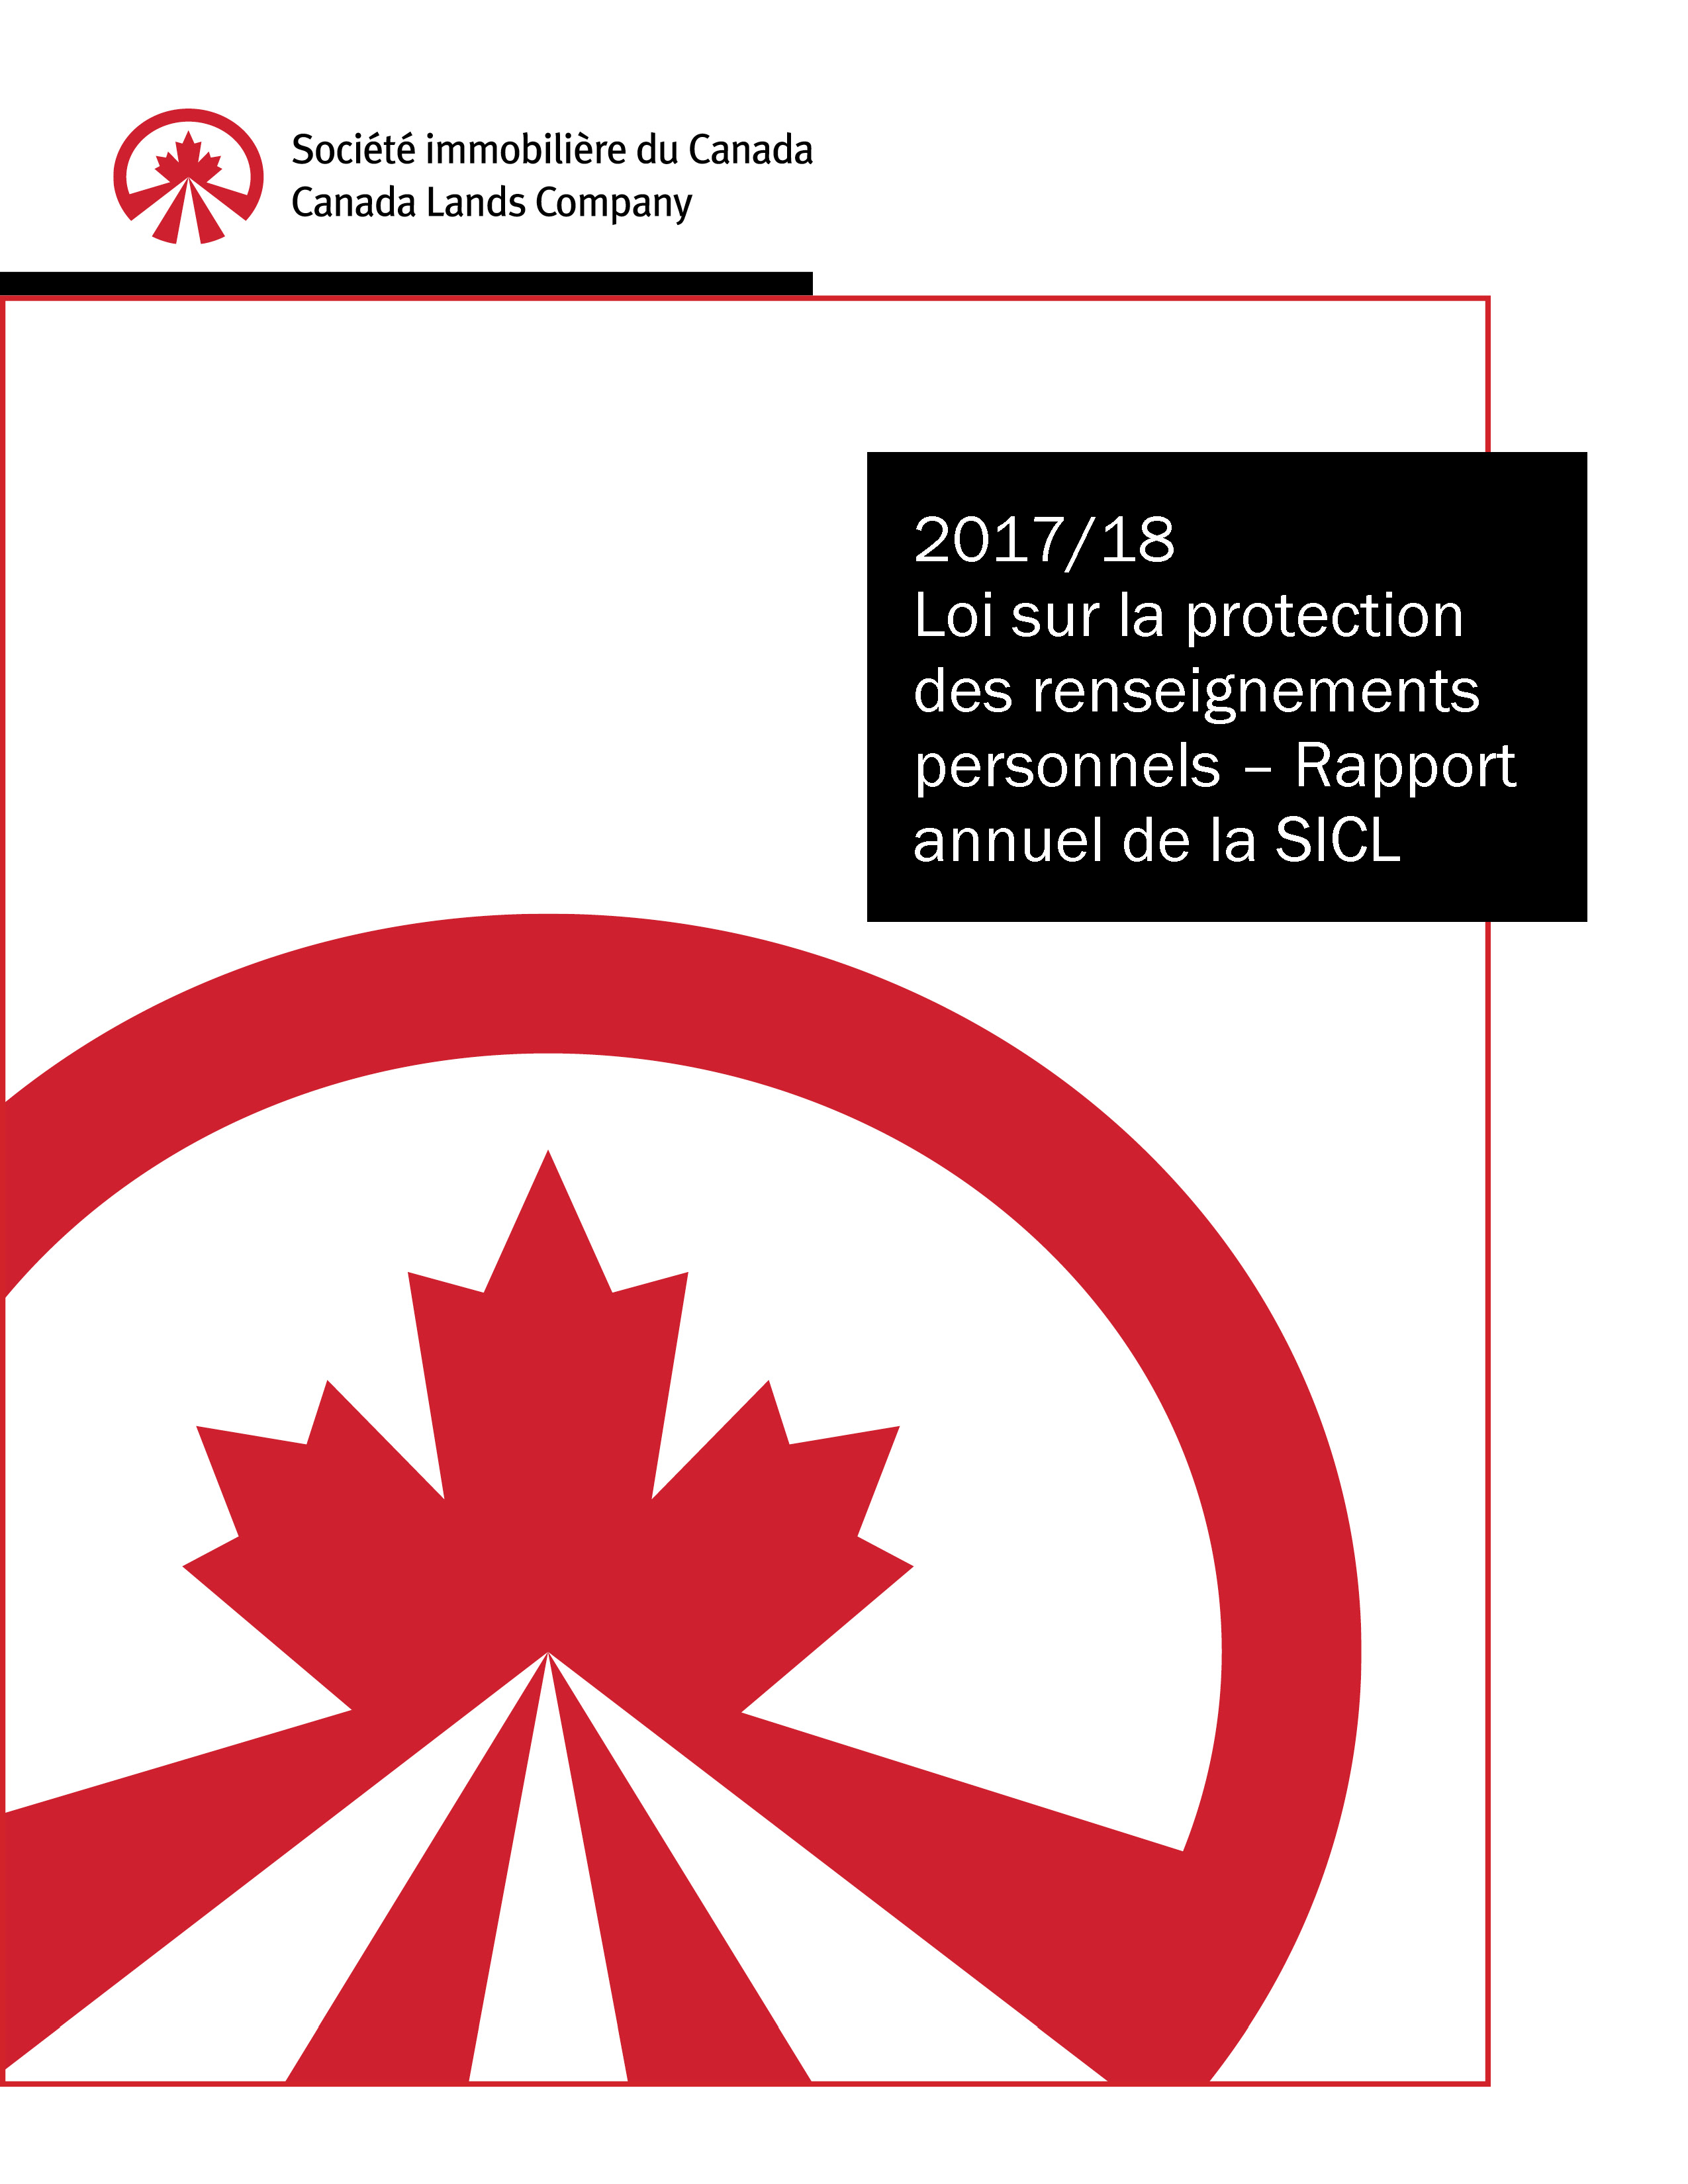 CLCL - Loi sur la protection des renseignements personnels 2018